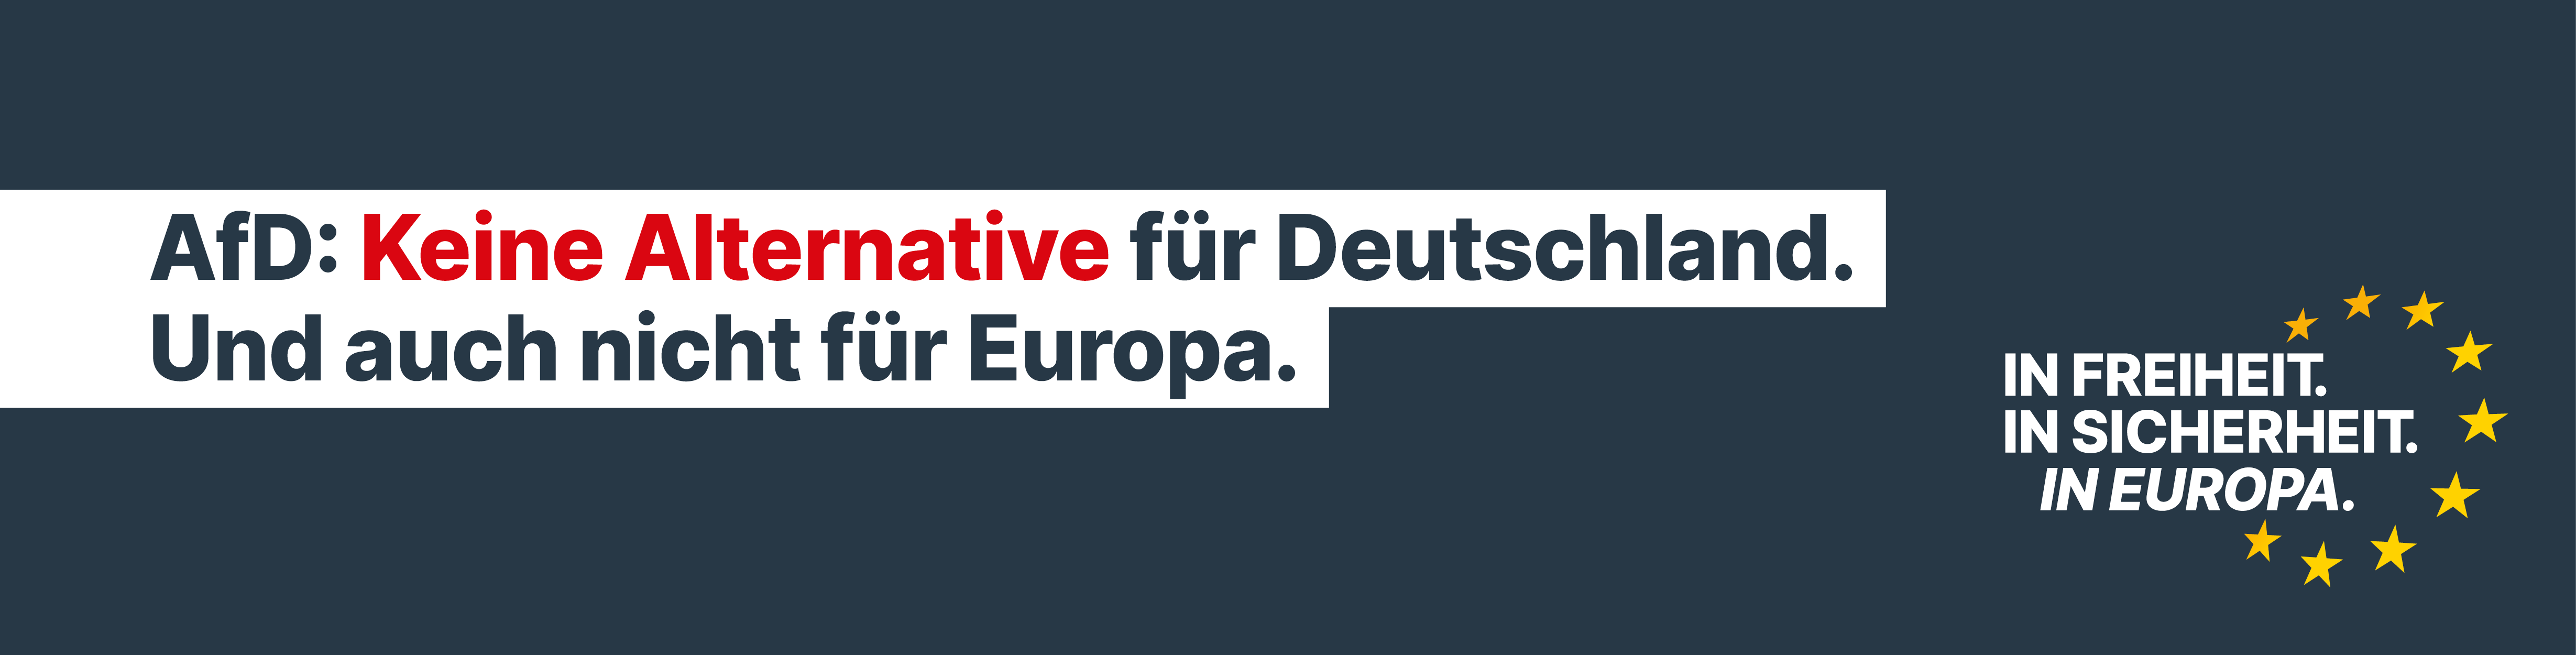 AfD: Keine Alternative für Deutschland. Und auch nicht für Europa